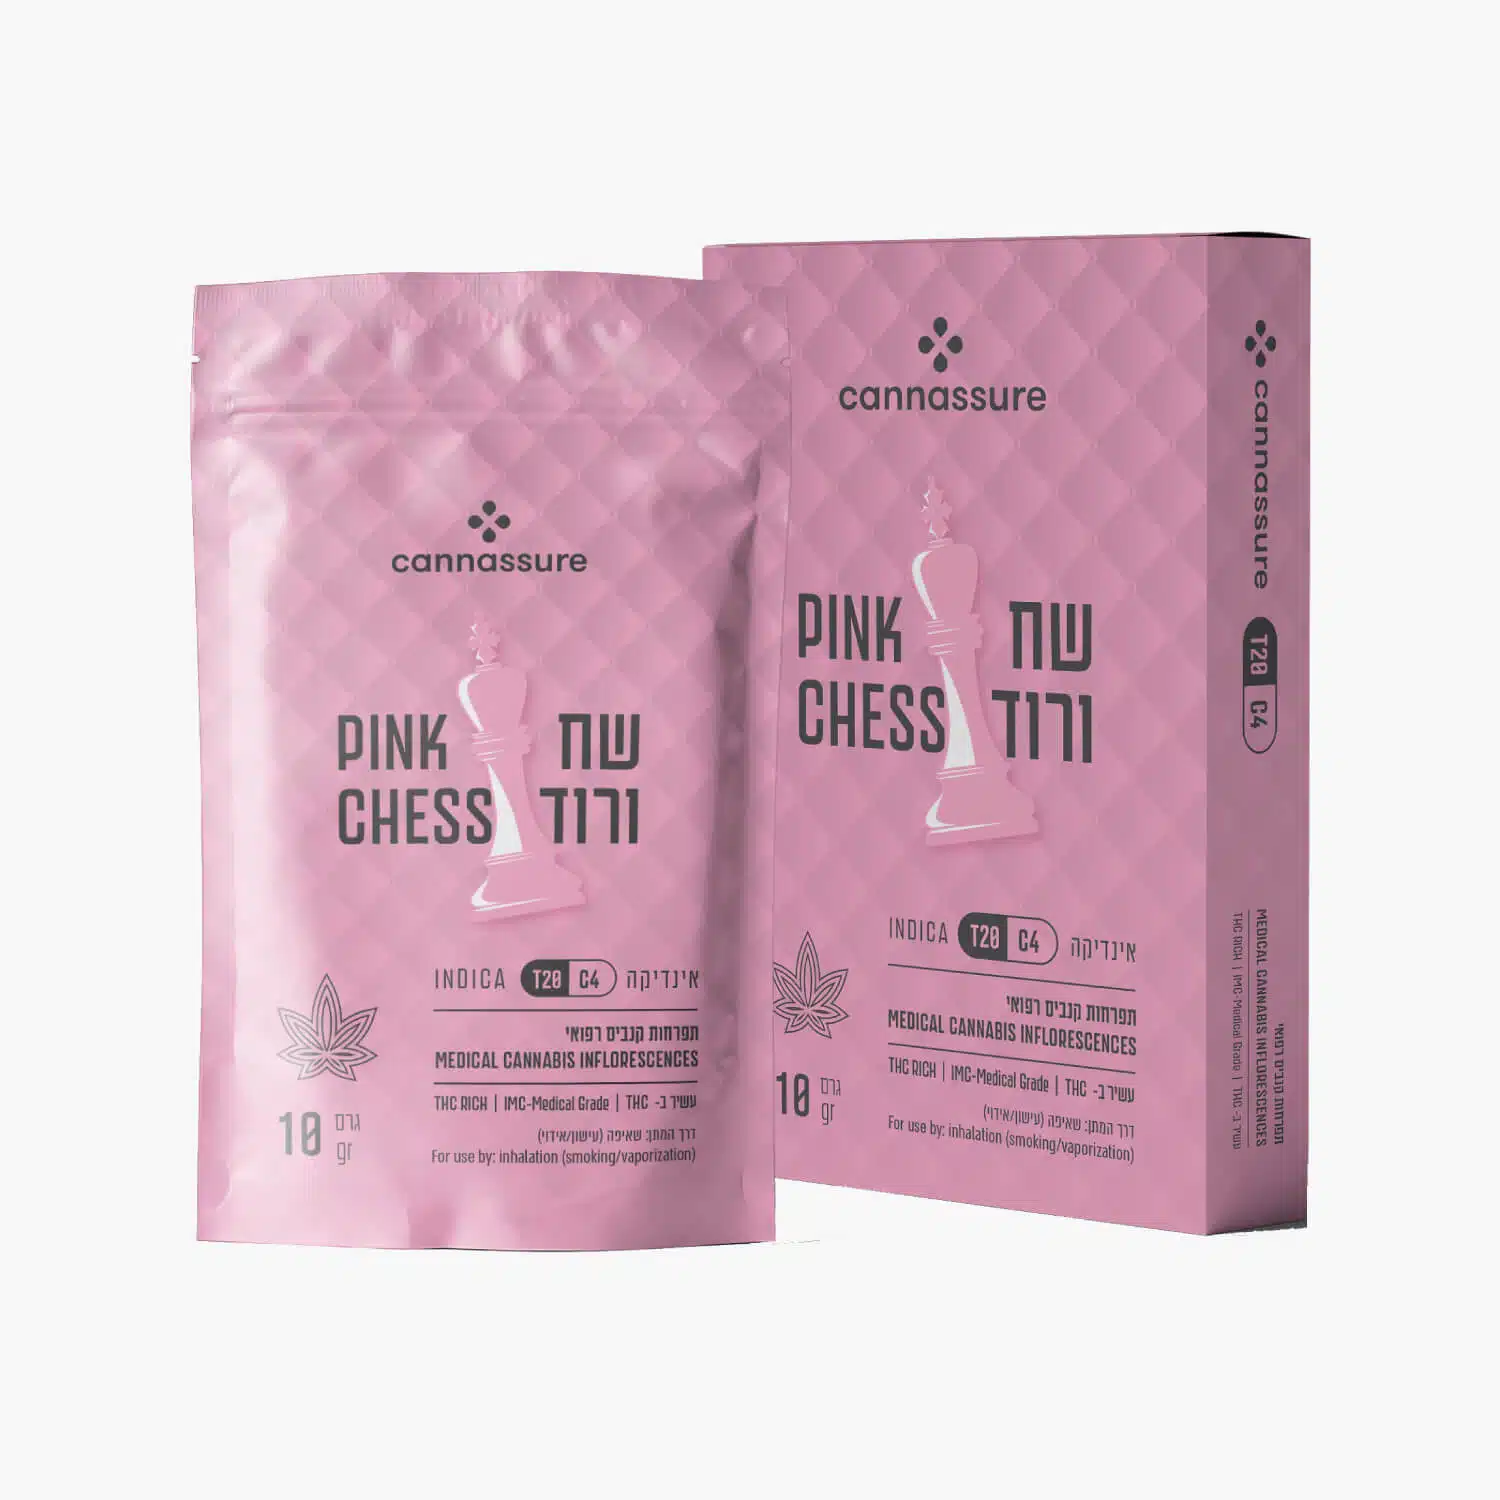 שח ורוד (pink chess) אינדיקה t20/c4